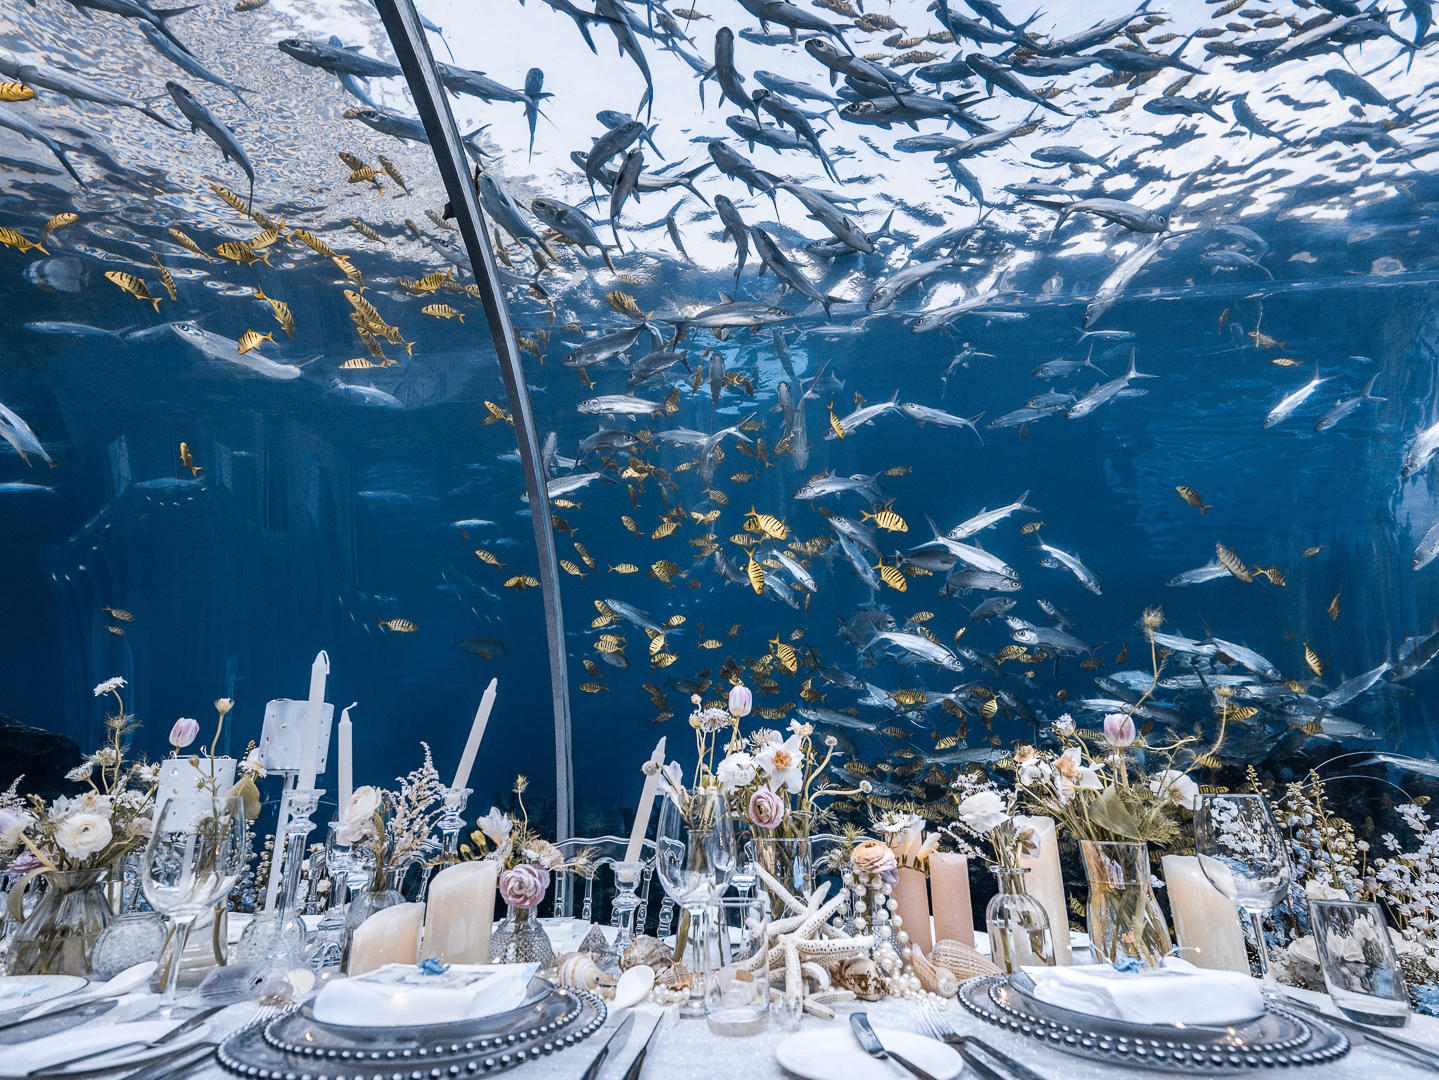 【梦幻海洋婚礼】掉进蔚蓝的海底世界